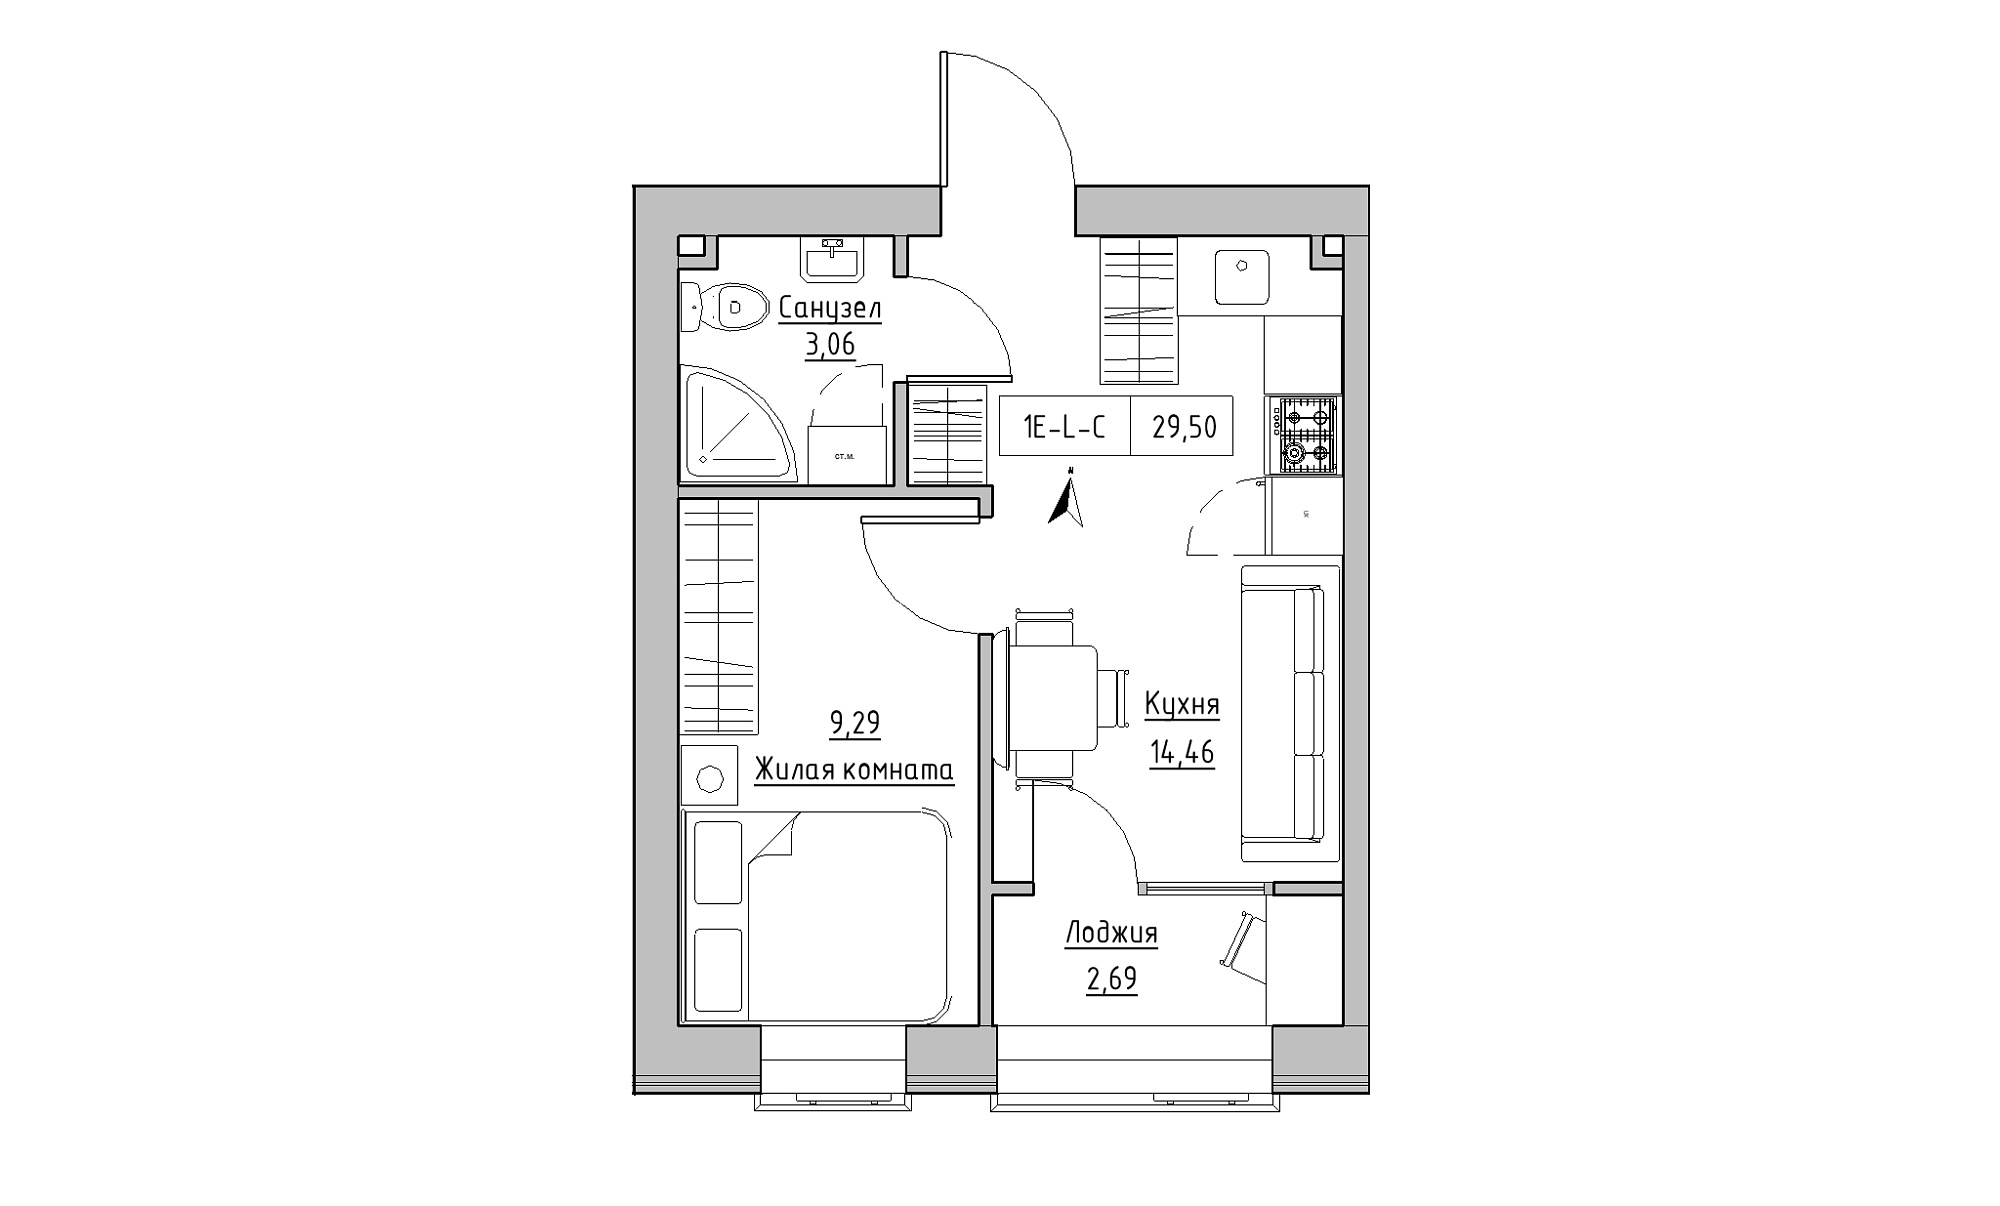 Планування 1-к квартира площею 29.5м2, KS-023-02/0011.